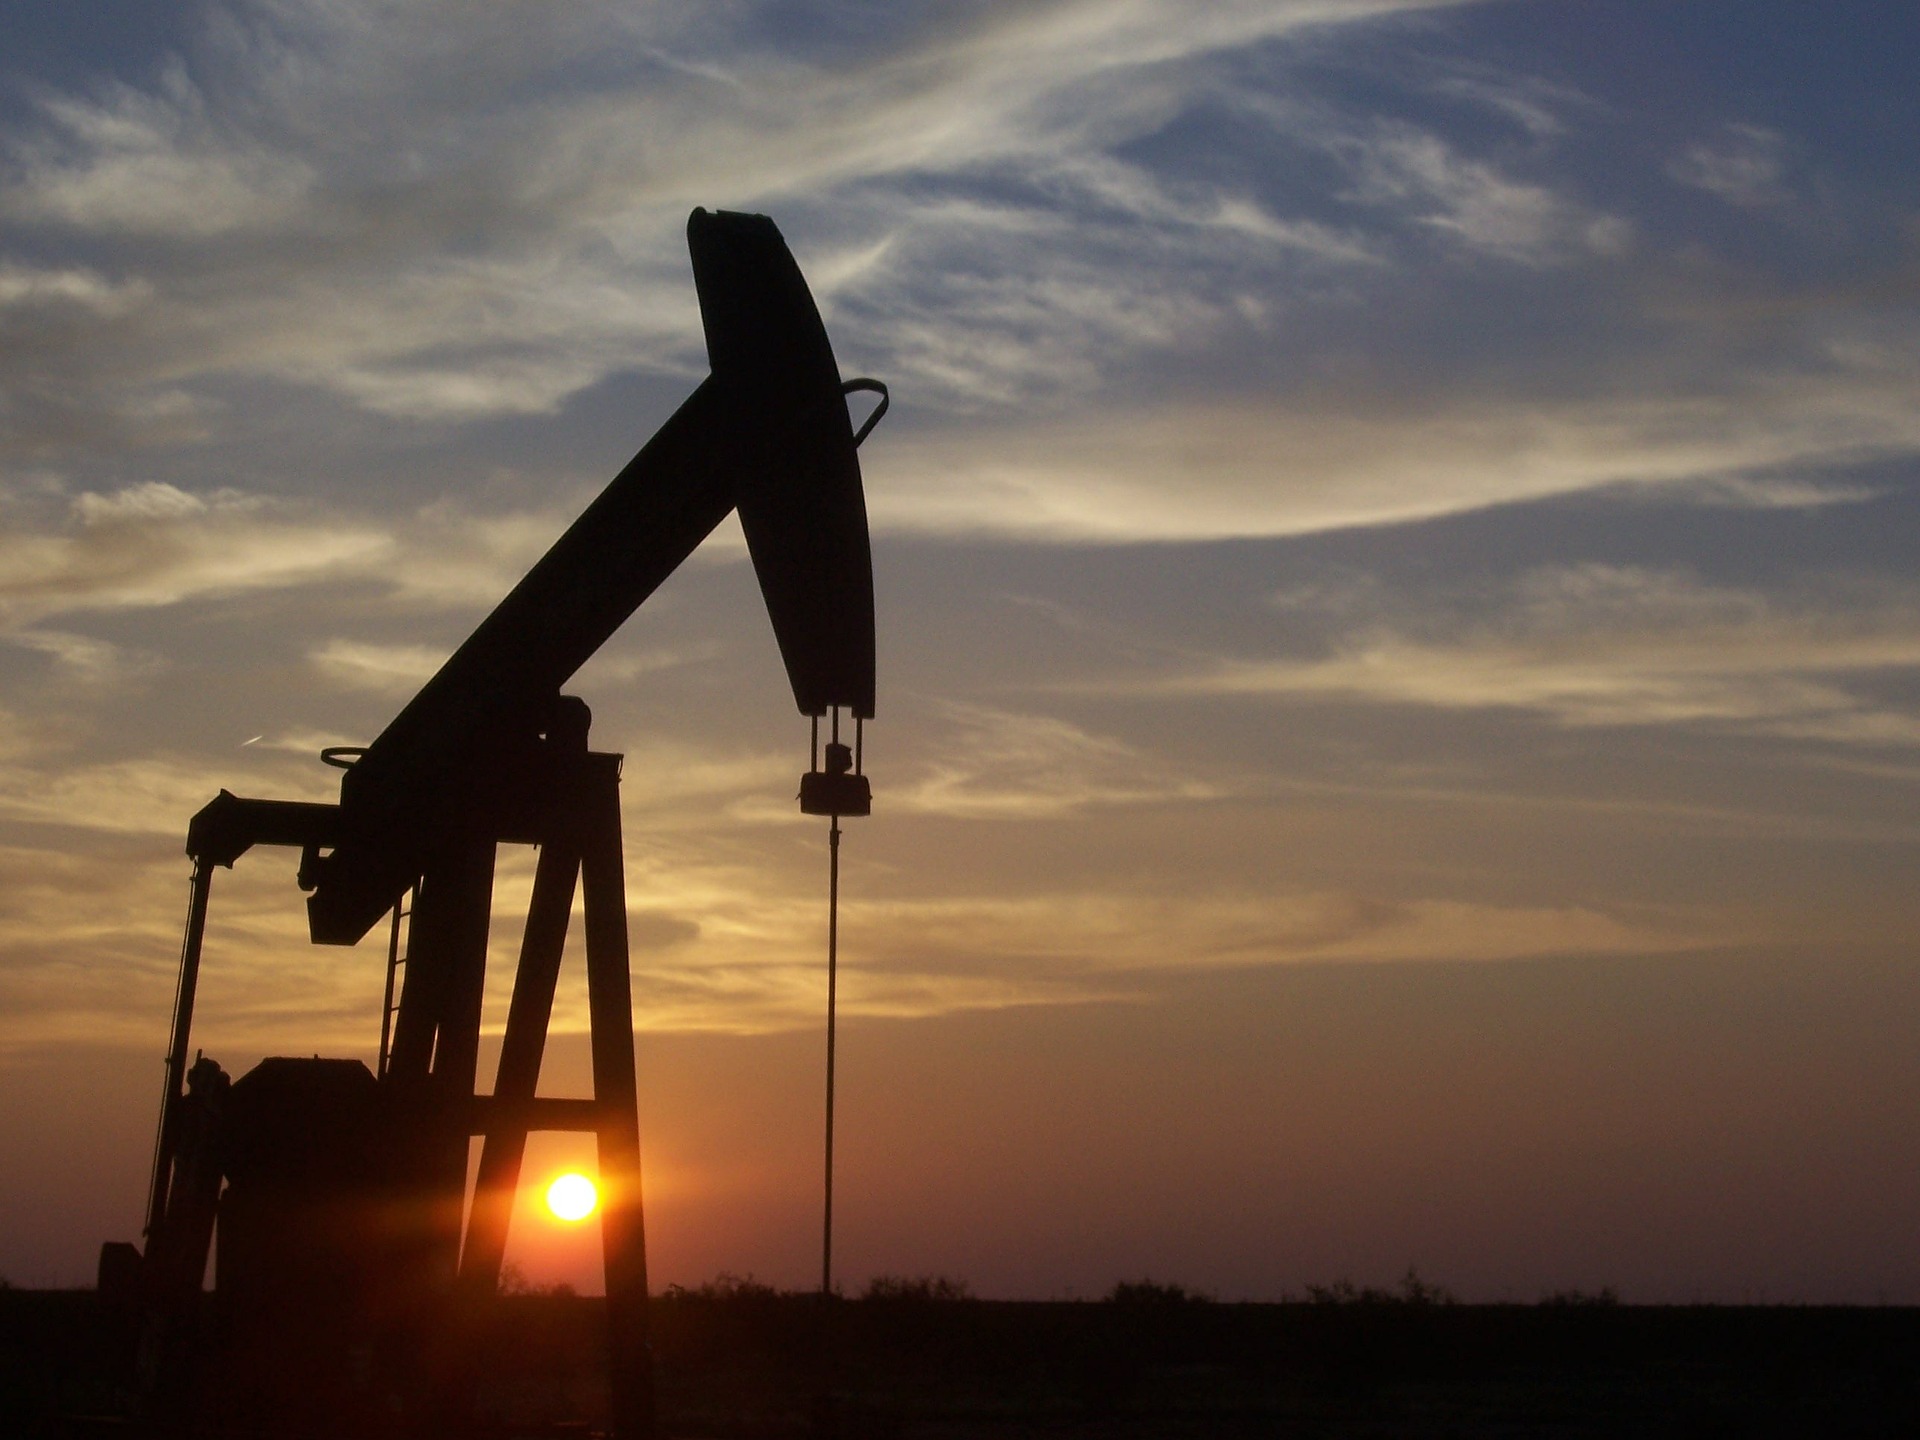 Oman crude oil price crosses $78 mark